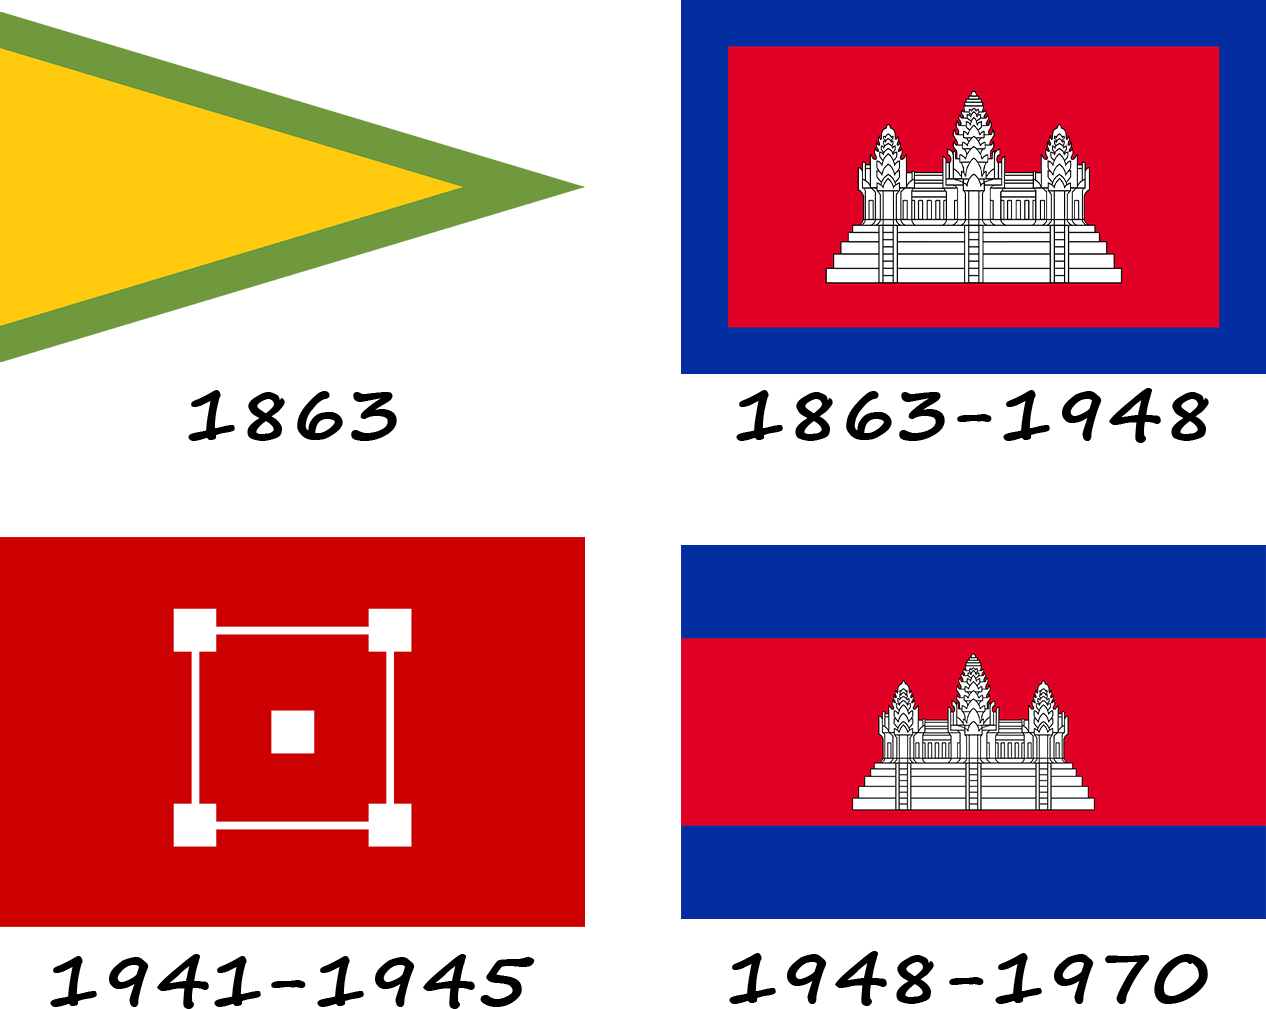 Historia de la bandera de Camboya. ¿Cómo ha cambiado la bandera de Camboya?